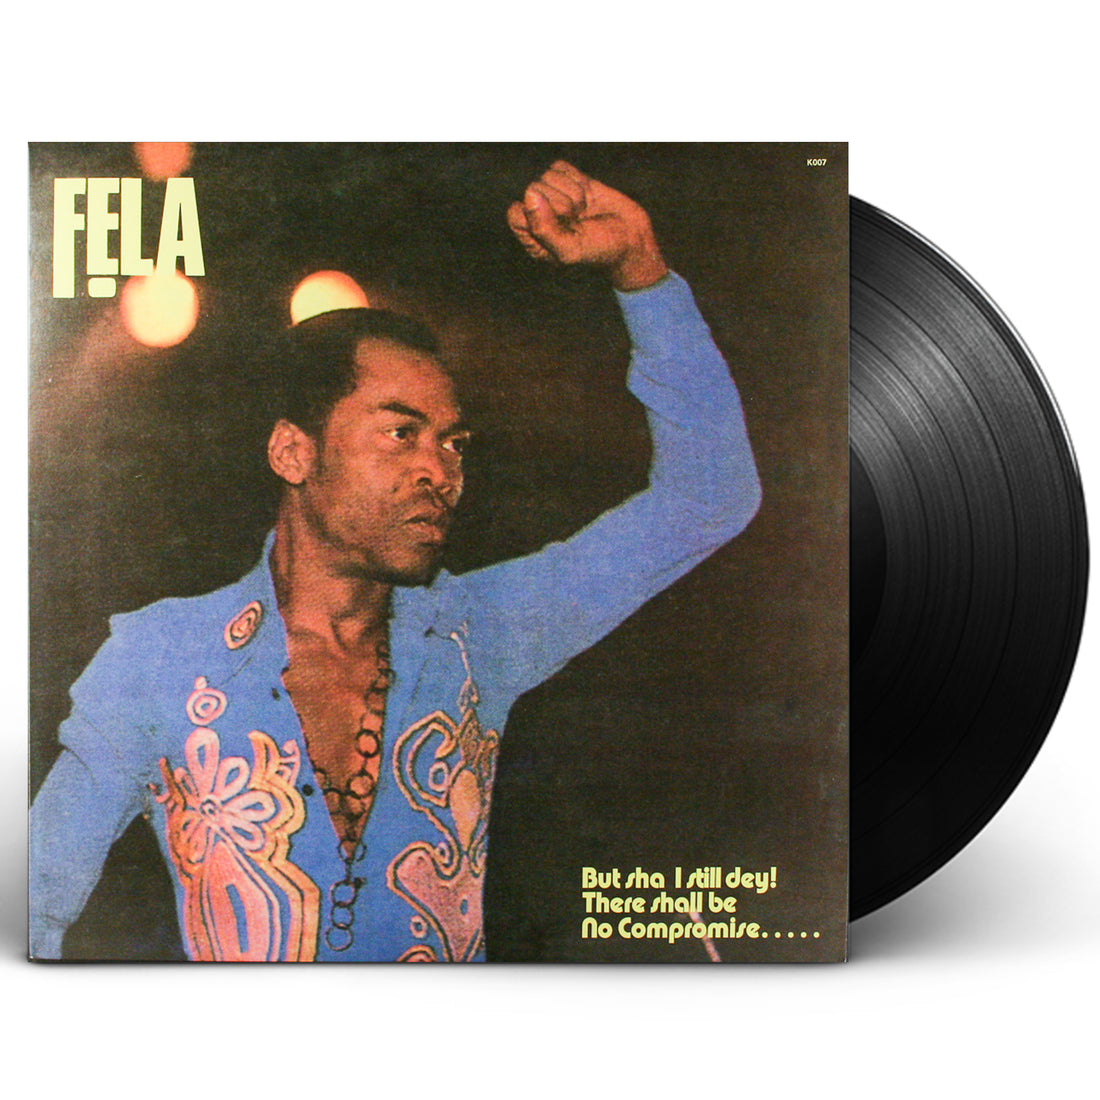 Fela Kuti "Army Arrangement" (1985) LP Vinyl